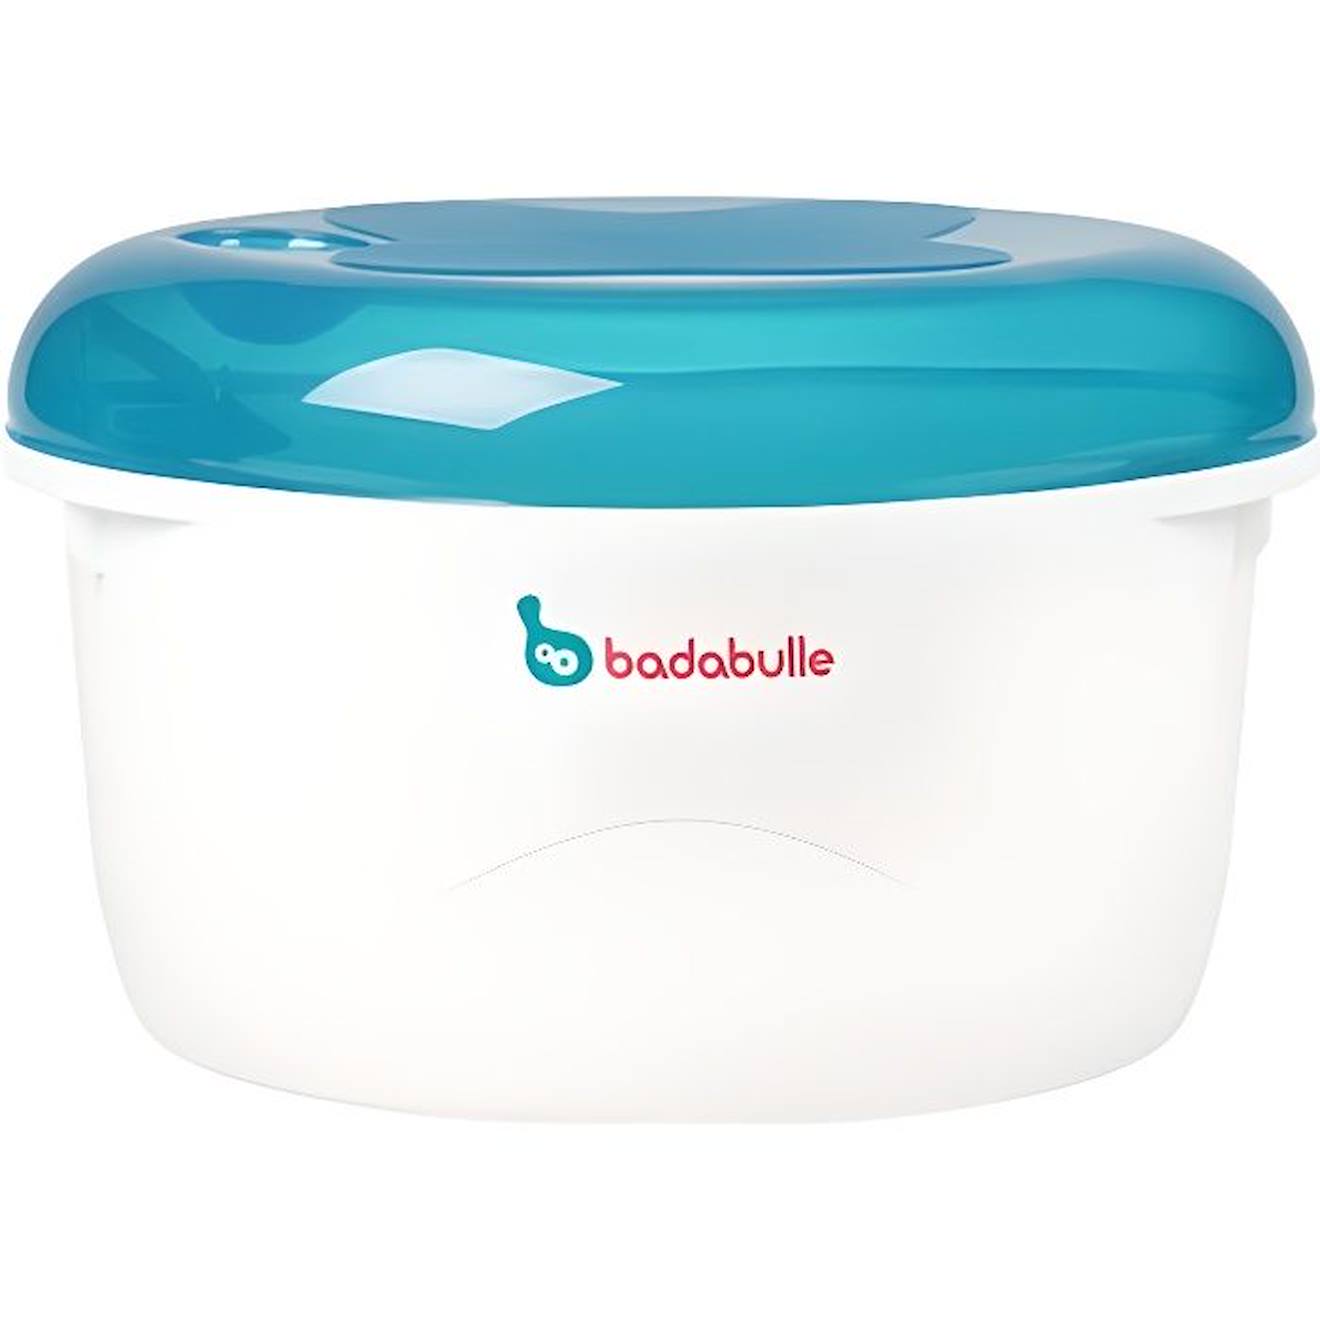 Stérilisateur Micro-ondes Badabulle - Bleu / Gris - Grande Capacité - Rapide - Pratique Bleu